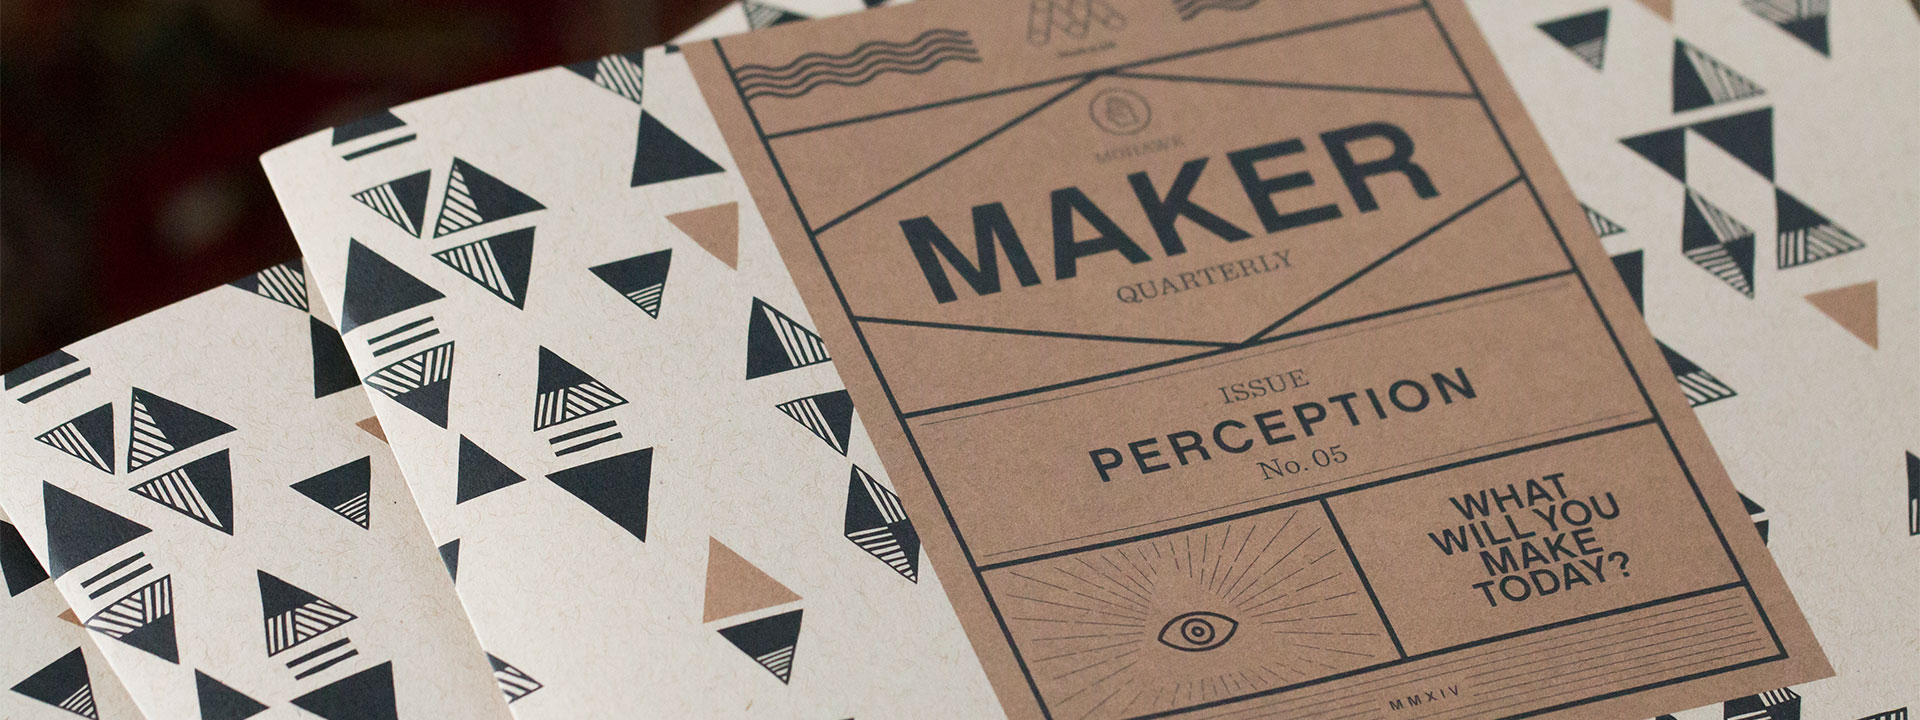 close-up of Maker Quarterly cover